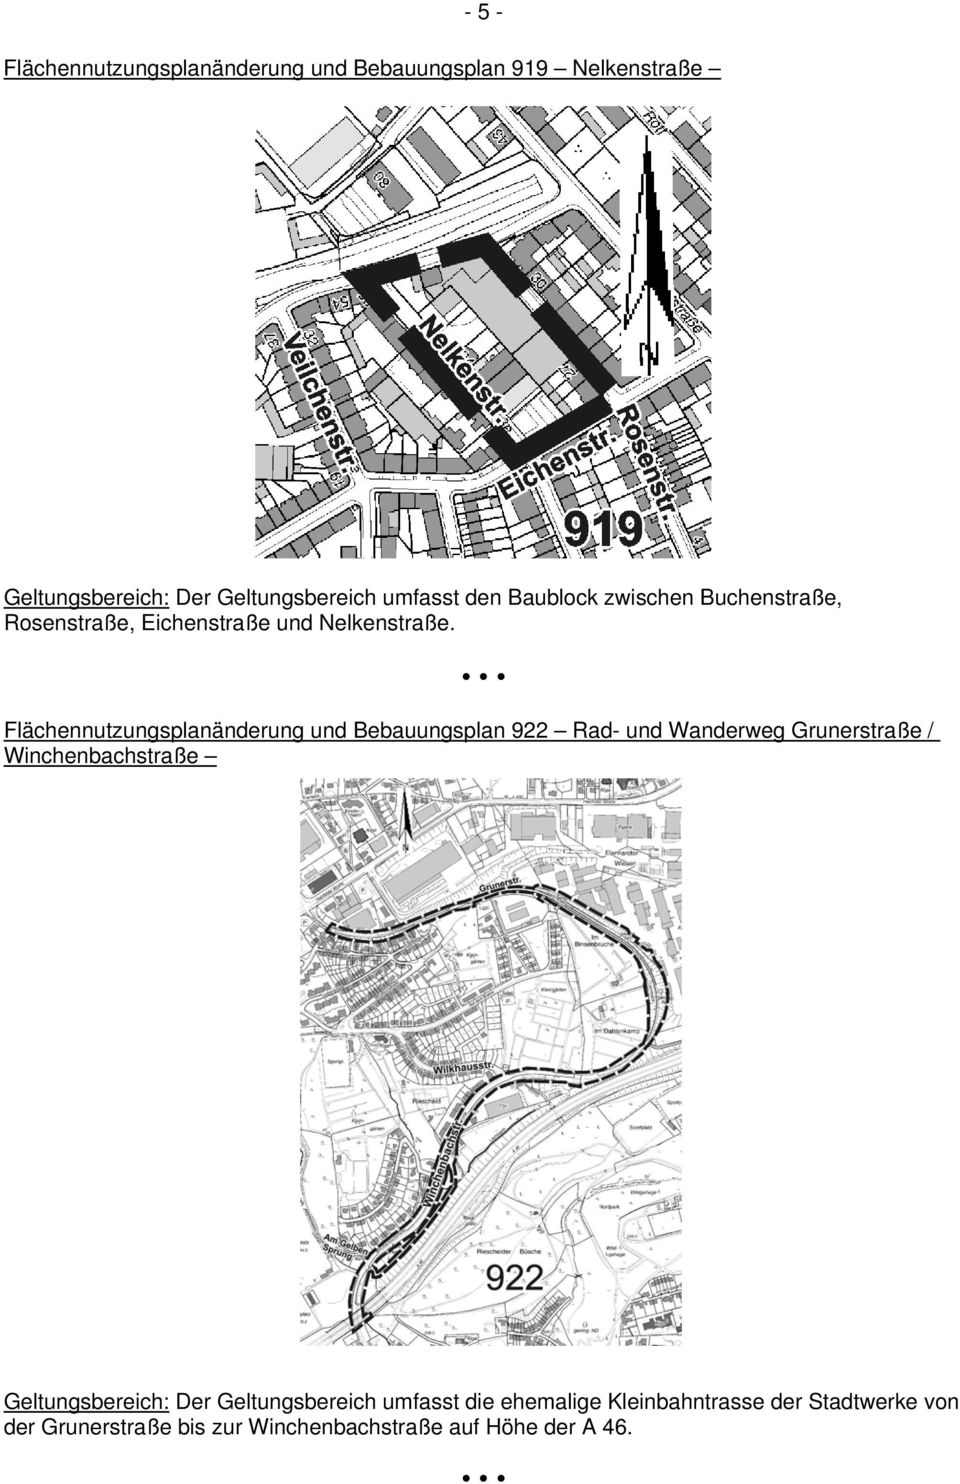 Flächennutzungsplanänderung und Bebauungsplan 922 Rad- und Wanderweg Grunerstraße / Winchenbachstraße